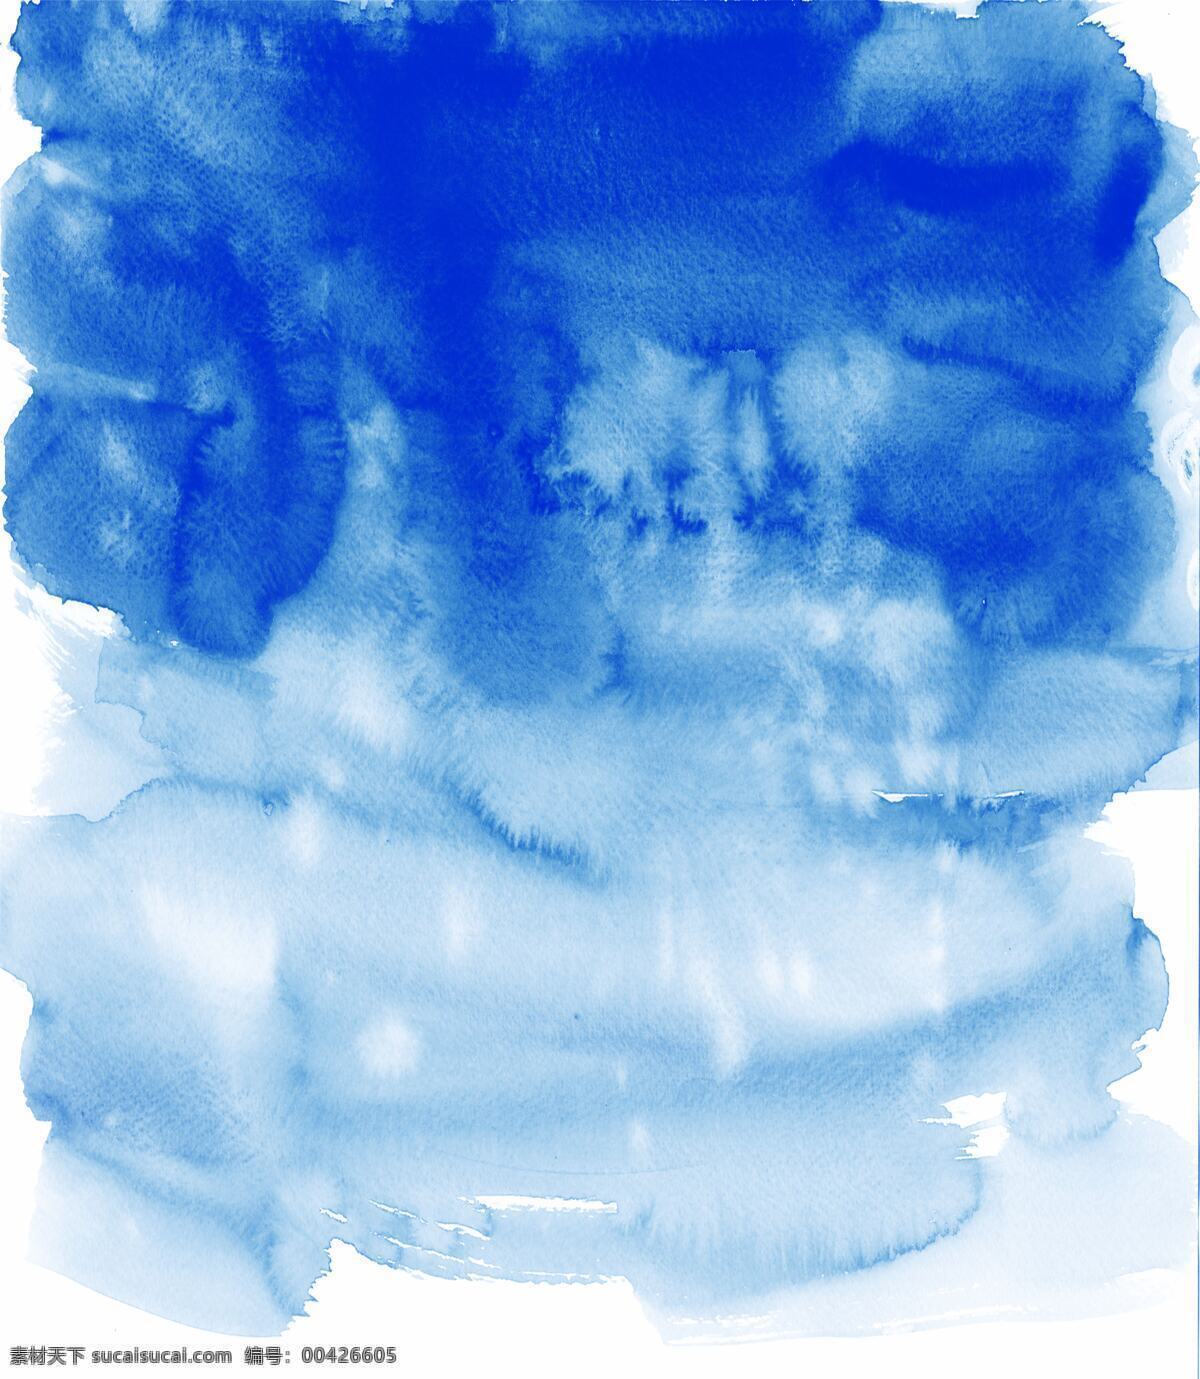 蓝色泼墨图片 油漆 水 纹理 颜色 明亮 喷雾 蓝色 背景 流淌 质地 水彩 背景底纹 泼墨 水彩泼墨 烟雾 室内广告设计